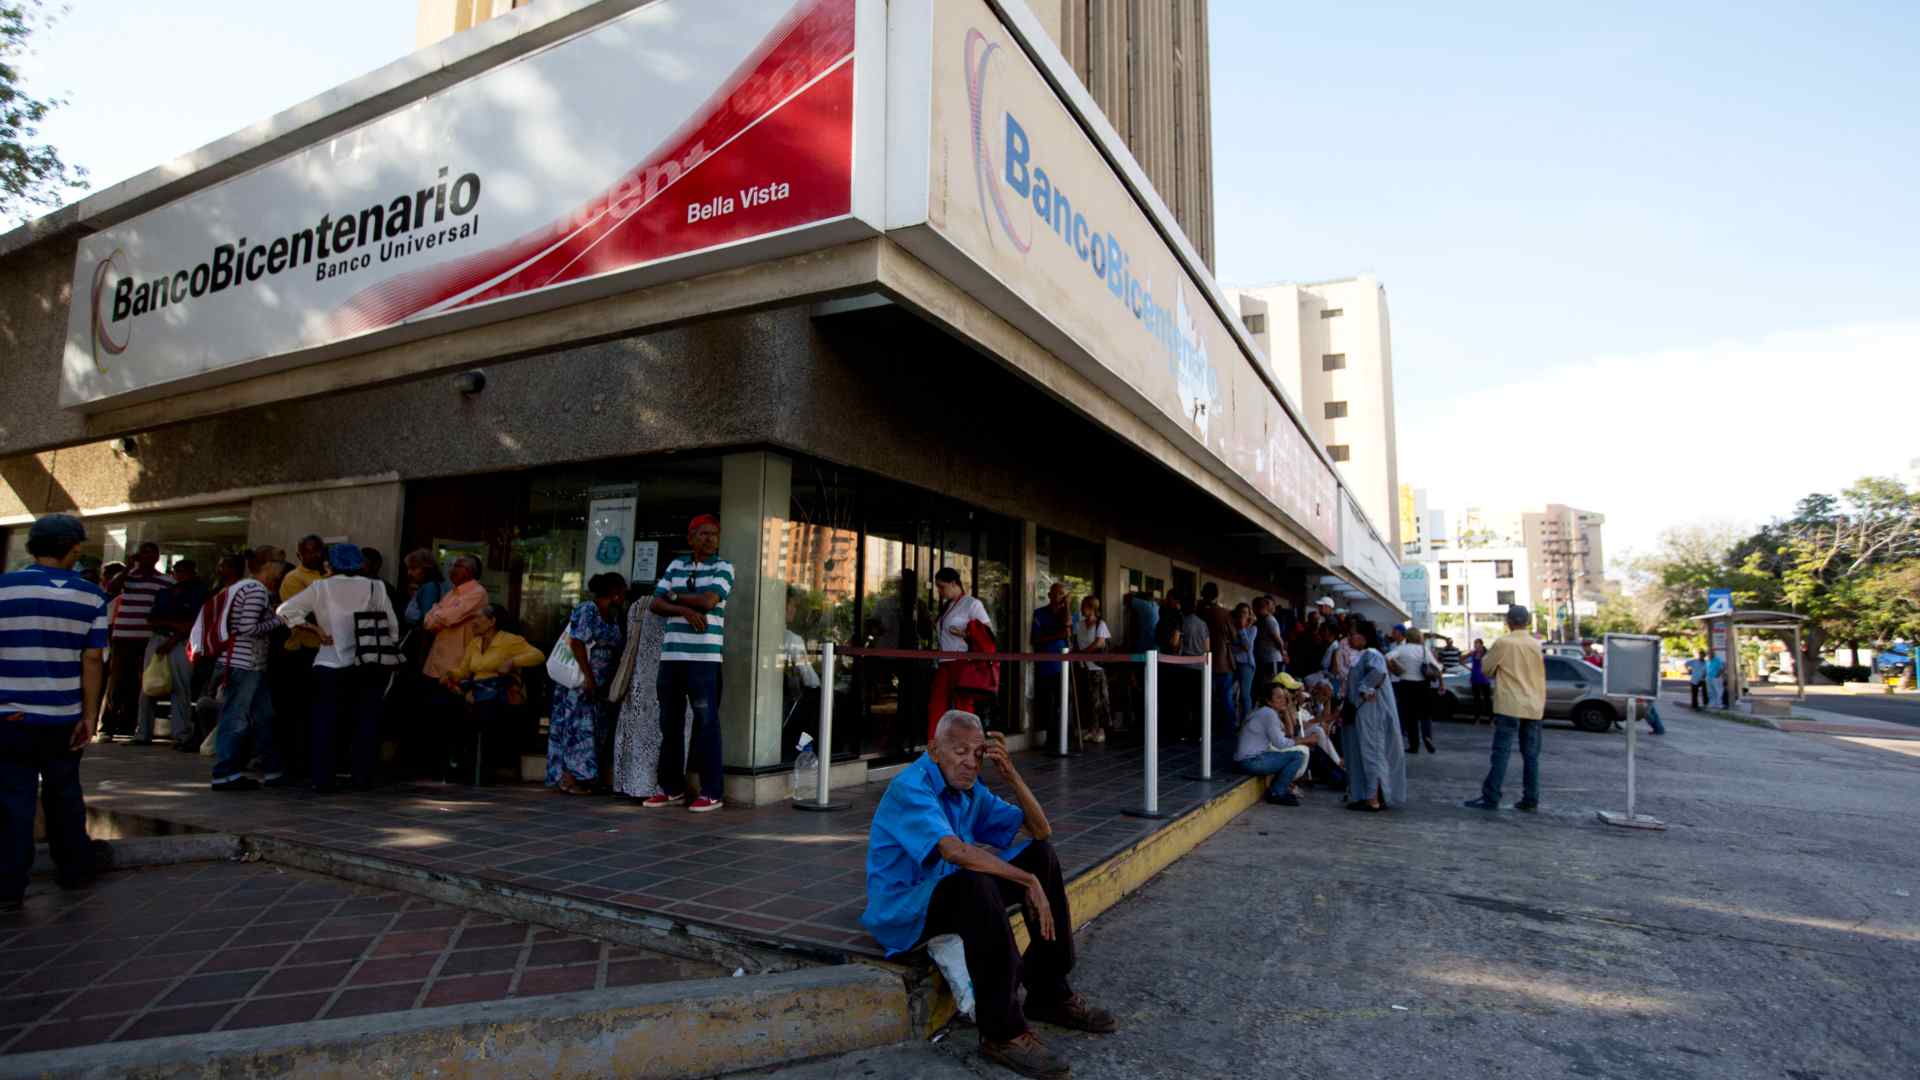 La recuperación económica en Venezuela va a suponer un "esfuerzo titánico", según el FMI